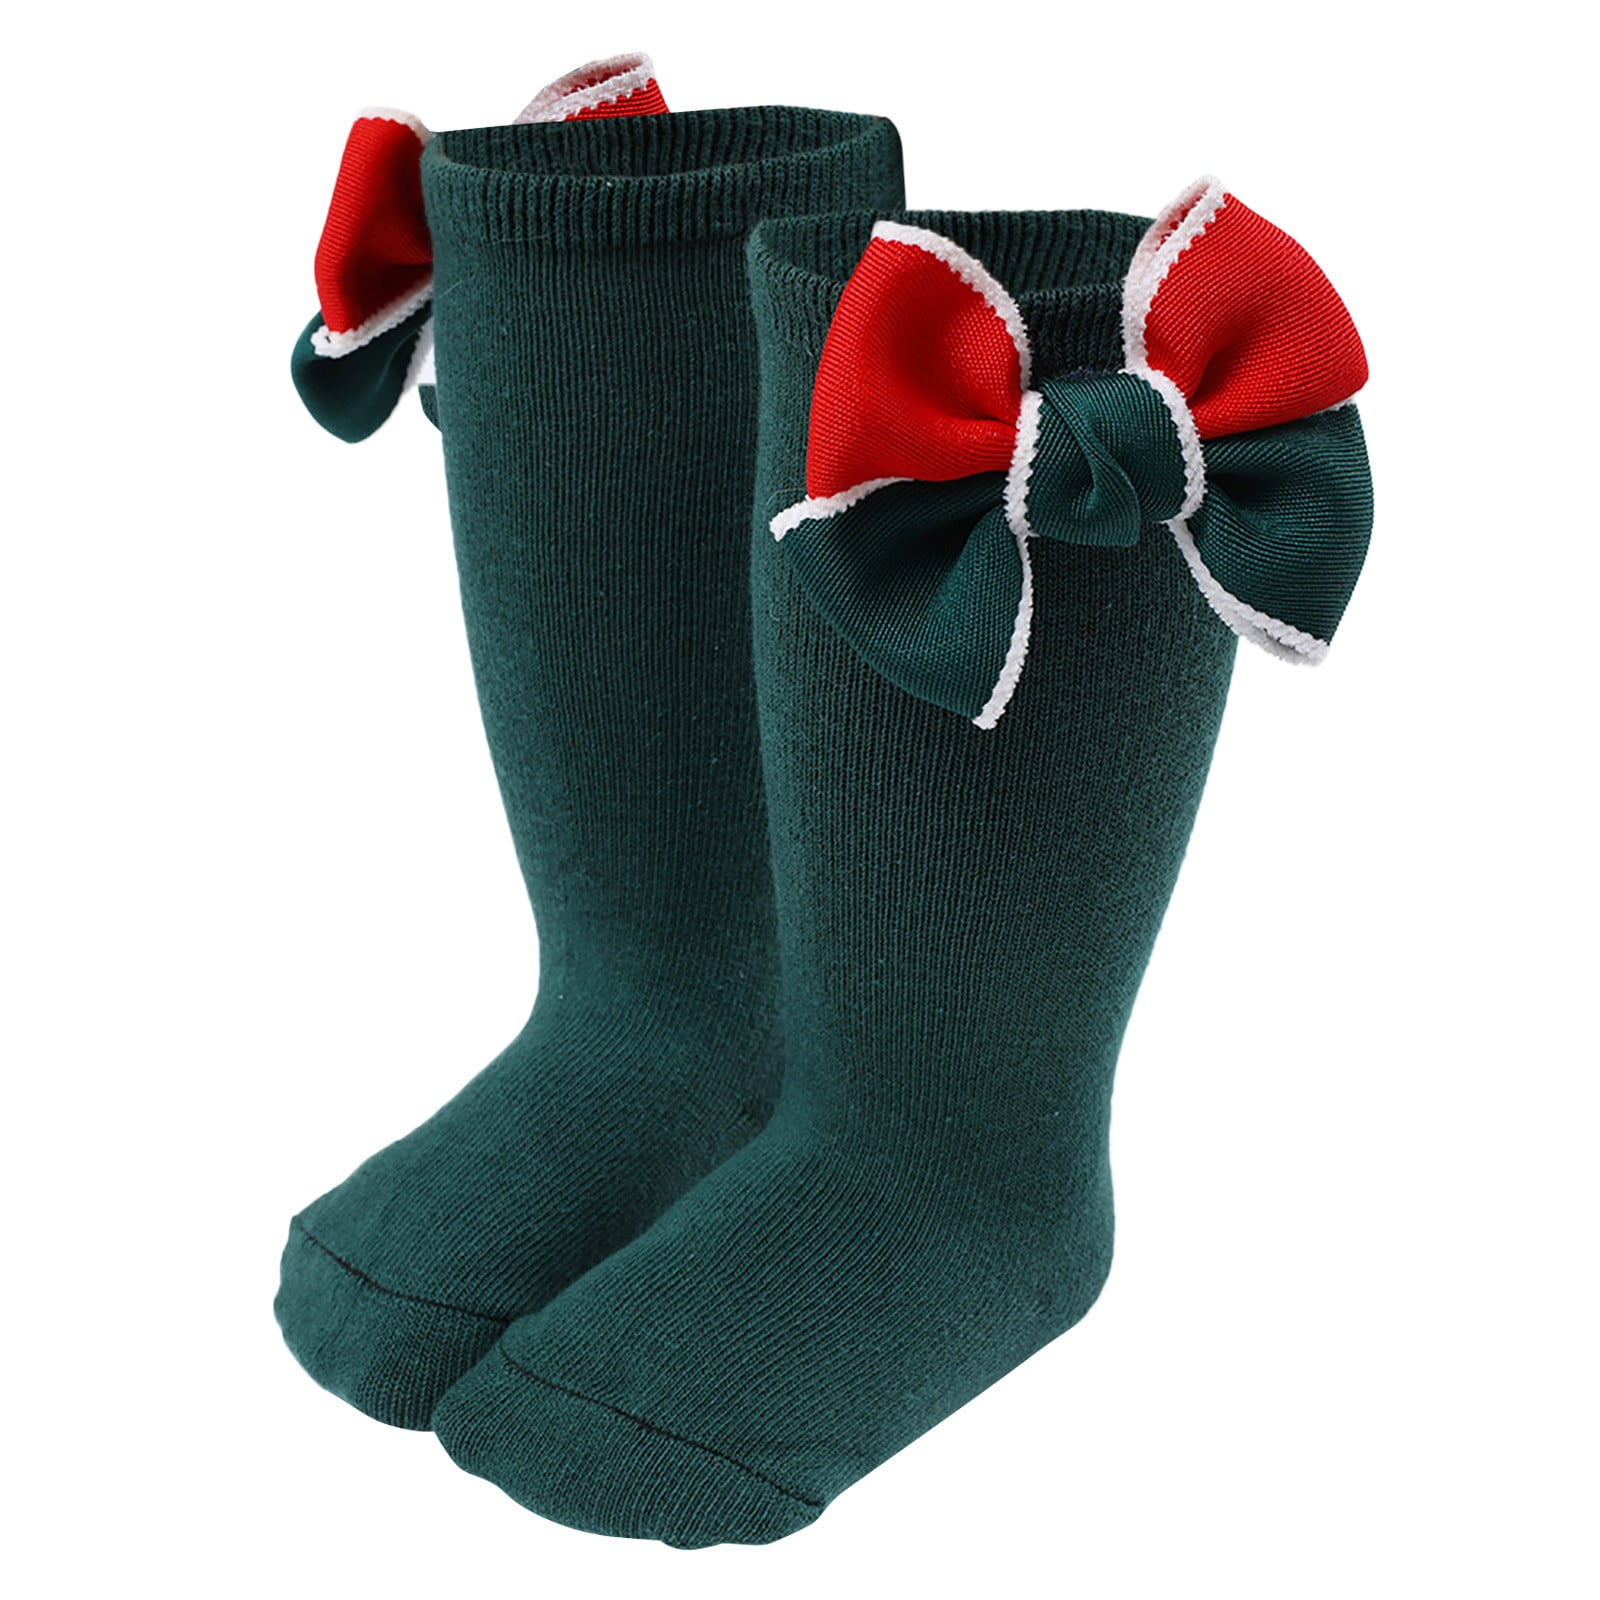 Qxutpo Winter Warm Long Socks for Toddlers Boys Girls Children Kids ...